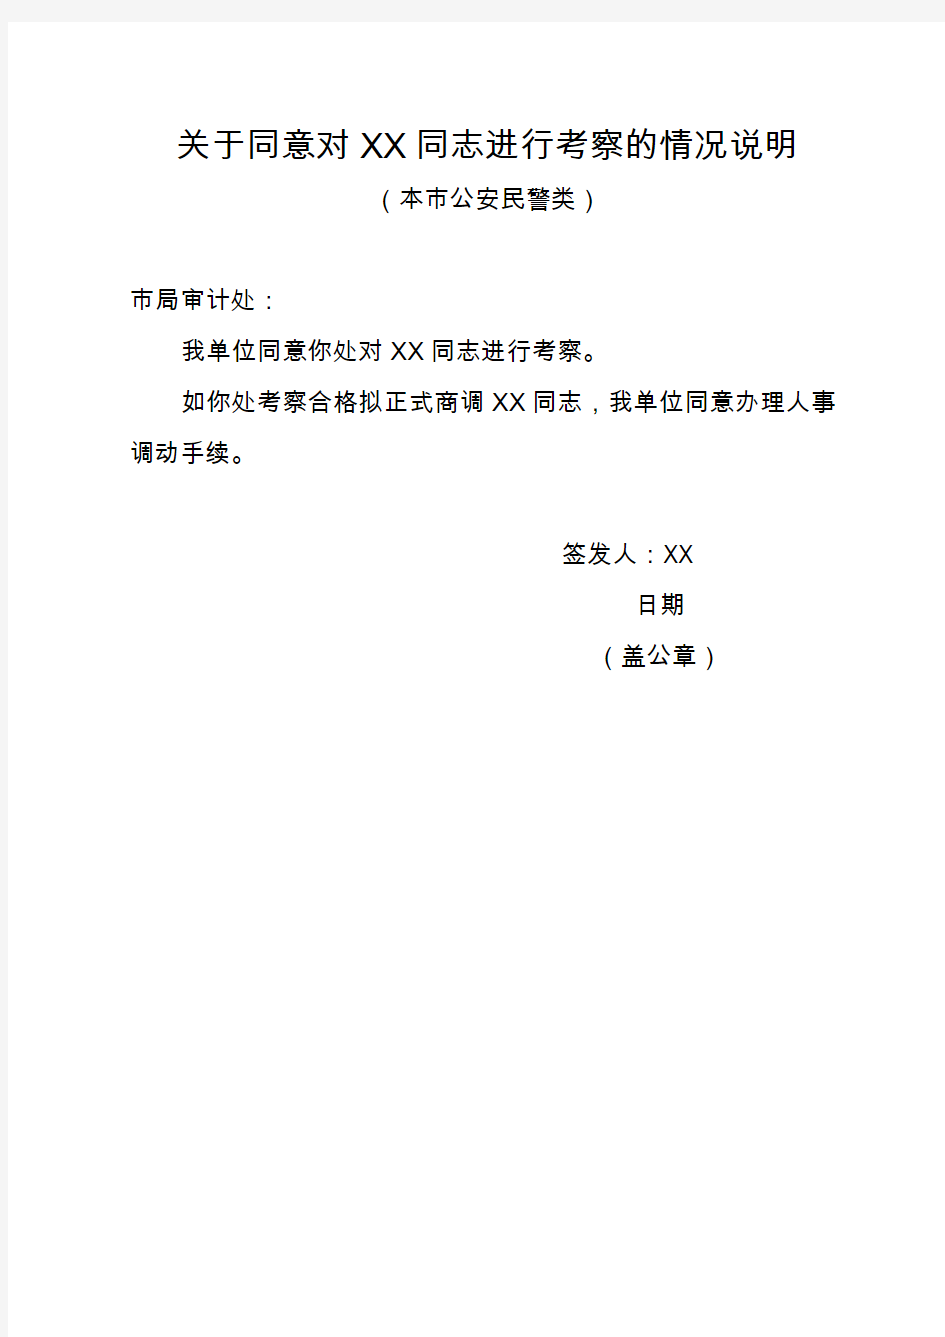 市公安民警： “同意重庆市公安局对XX同志进行考察” …